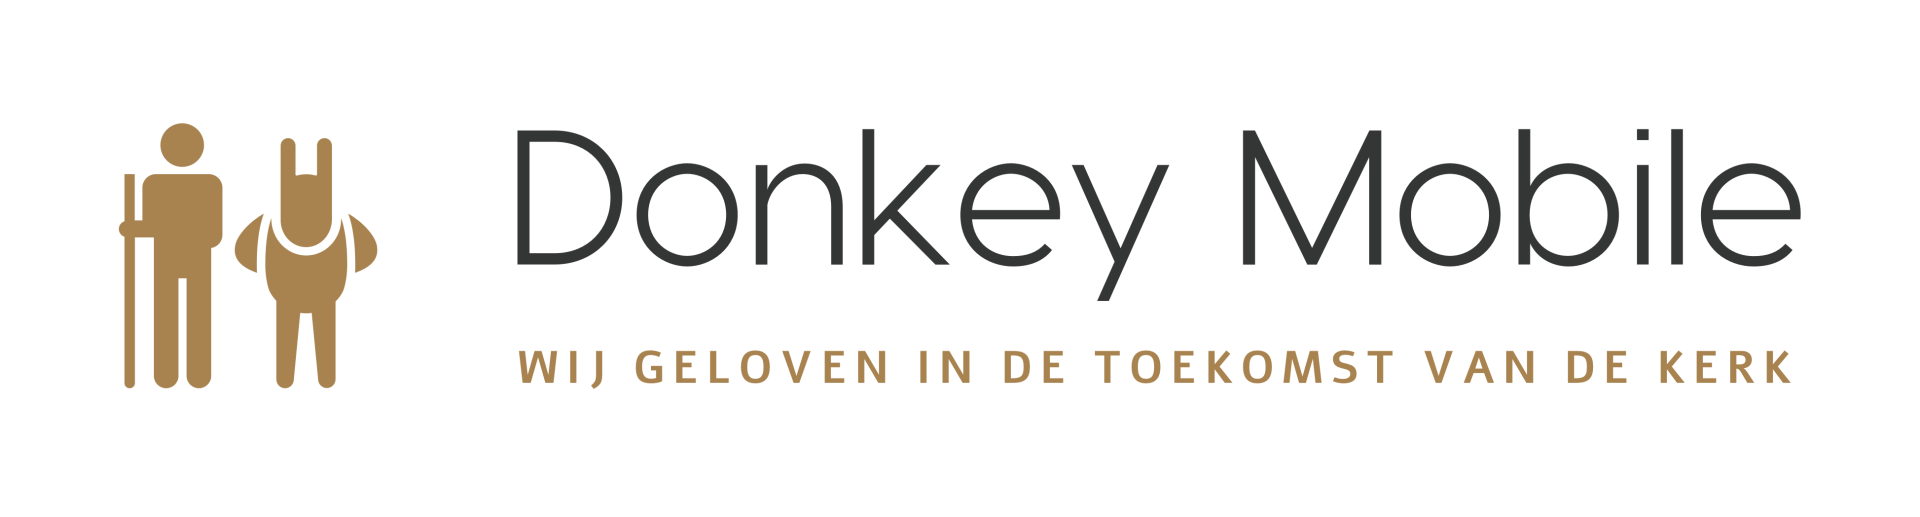 Kerk app Donkey Mobile | Baanbrekende mobiele kerkapp